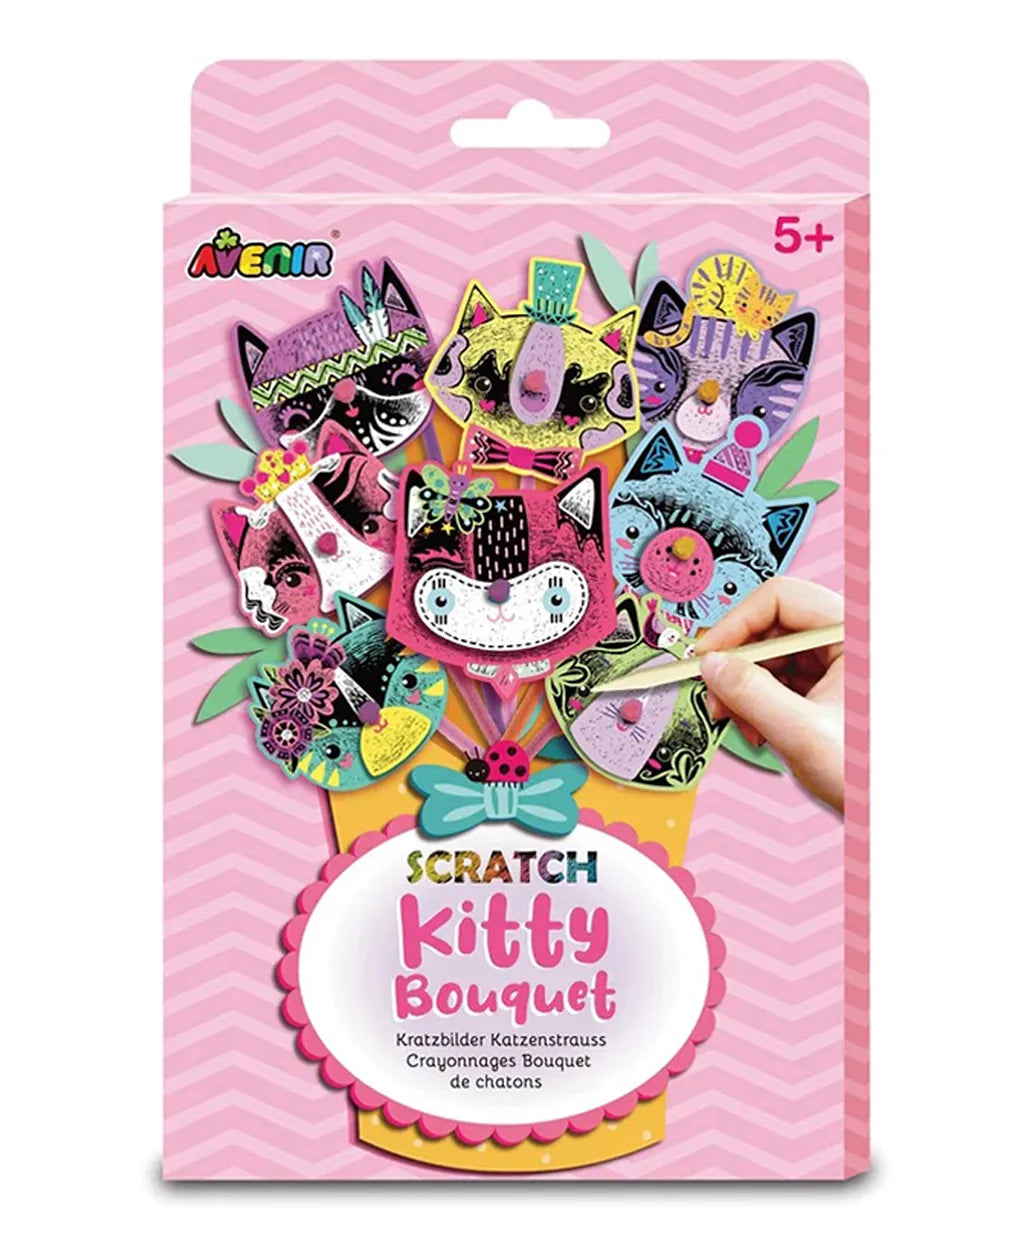 Avenir Scratch Bouquet Kit - Kitty - Laadlee